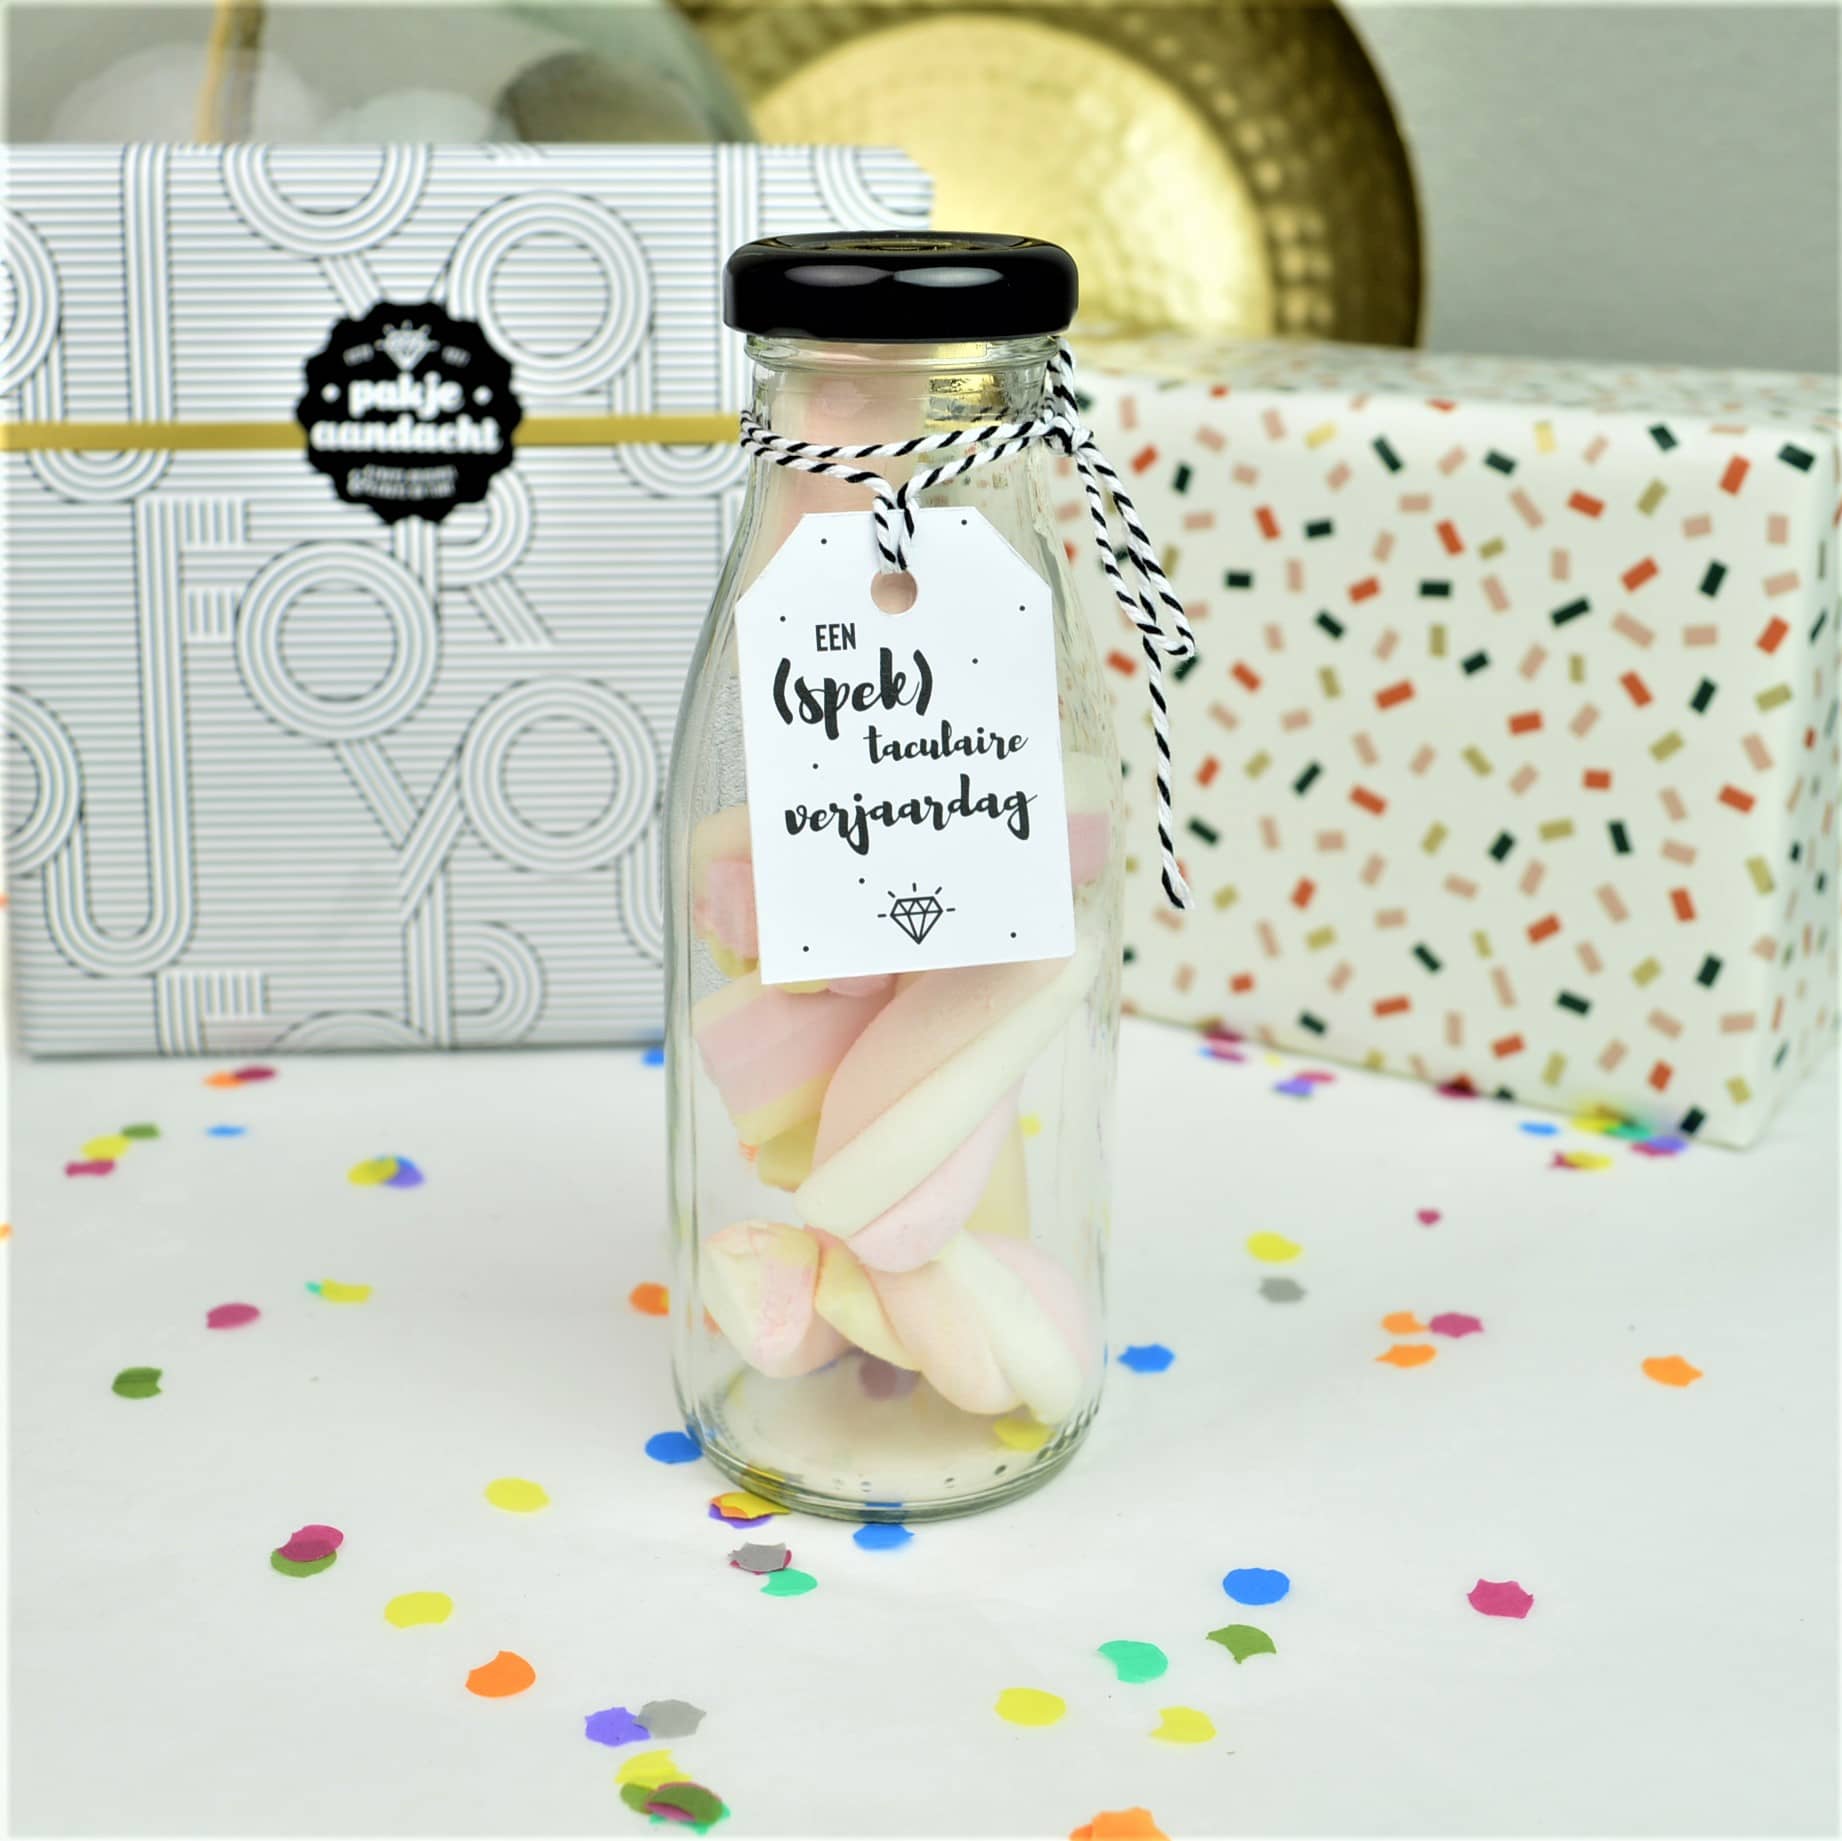 Super leuke flesjes snoep met verschillende pakkende teksten (spek)taculaire verjaardag